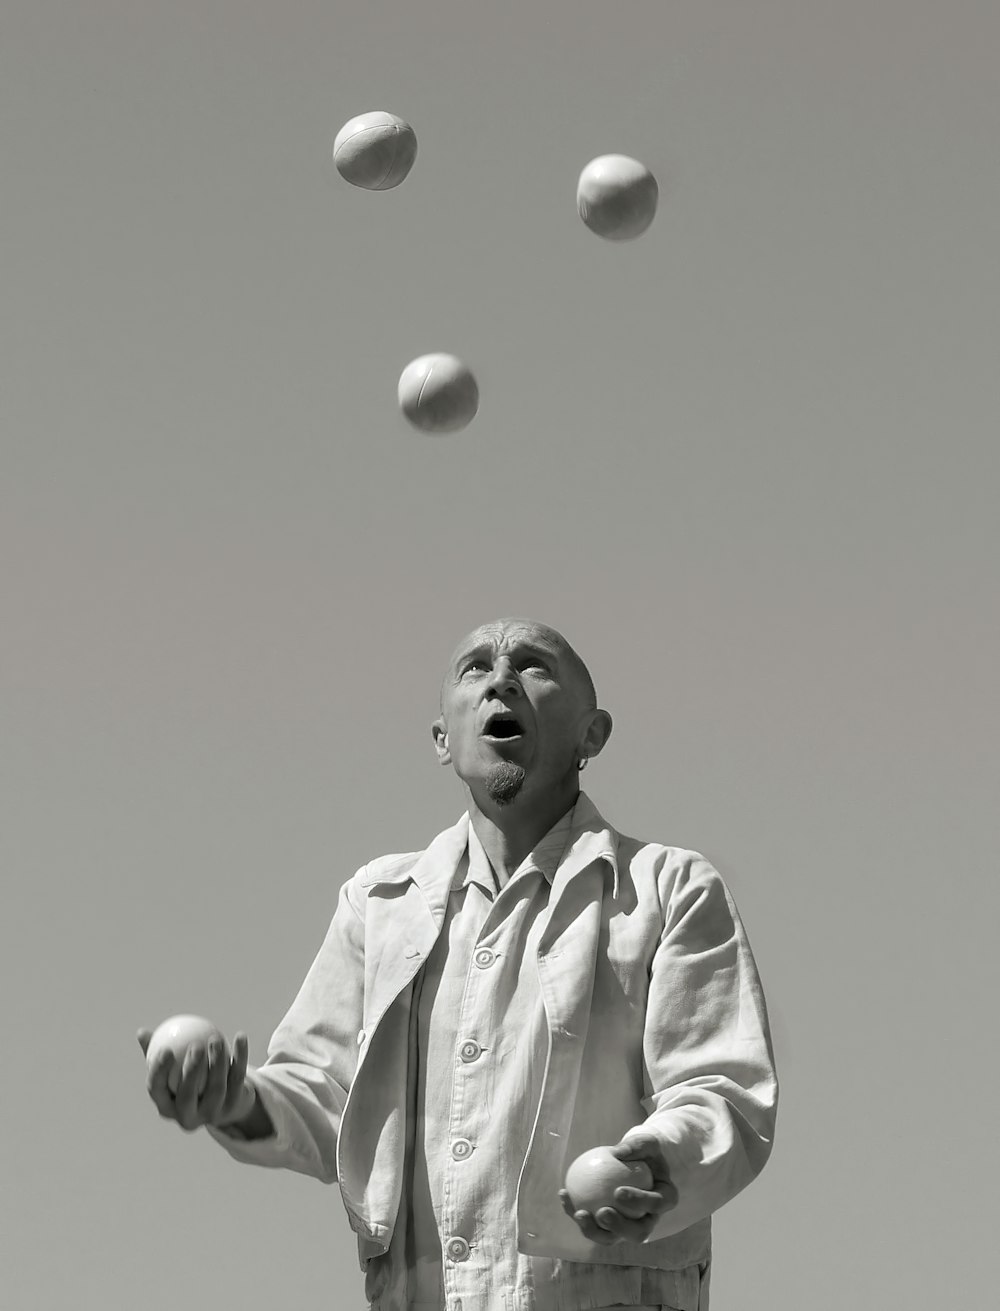 Un homme jonglant avec des balles en l’air